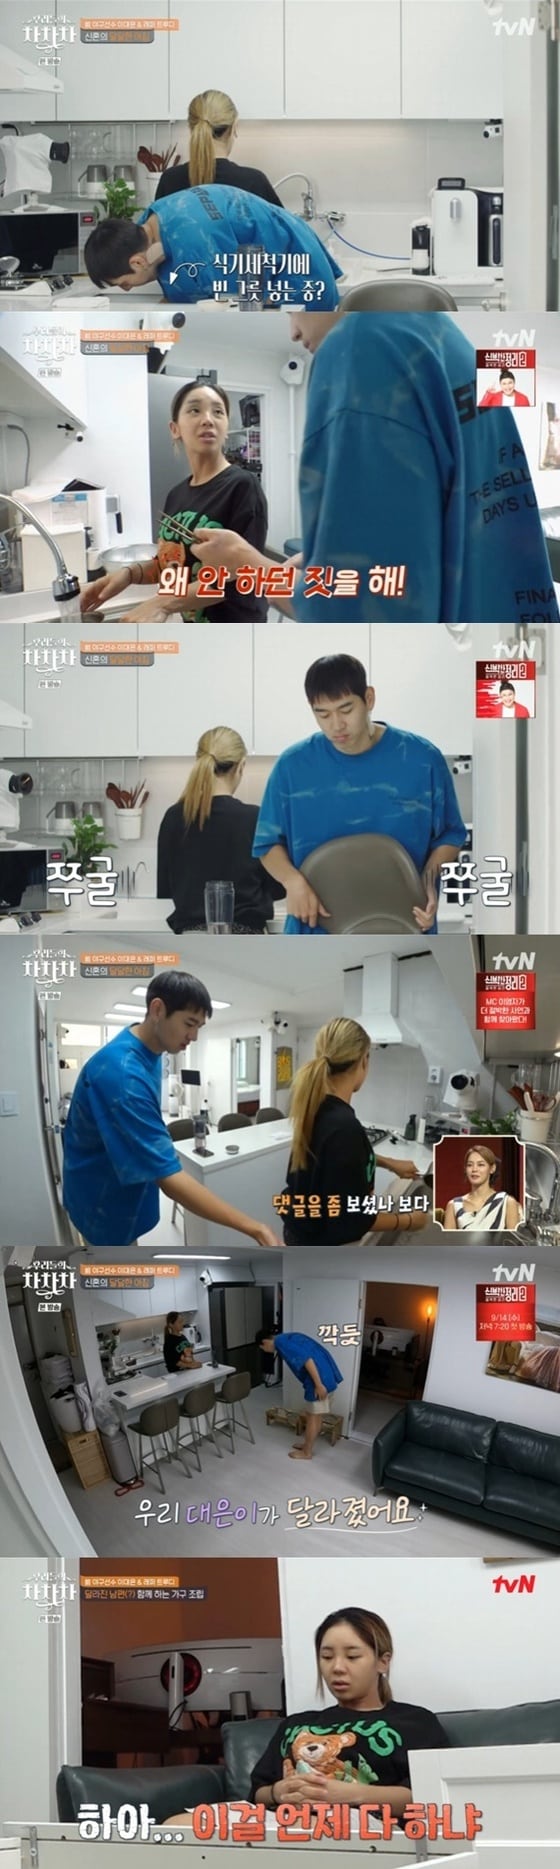 tvN '우리들의 차차차' 캡처